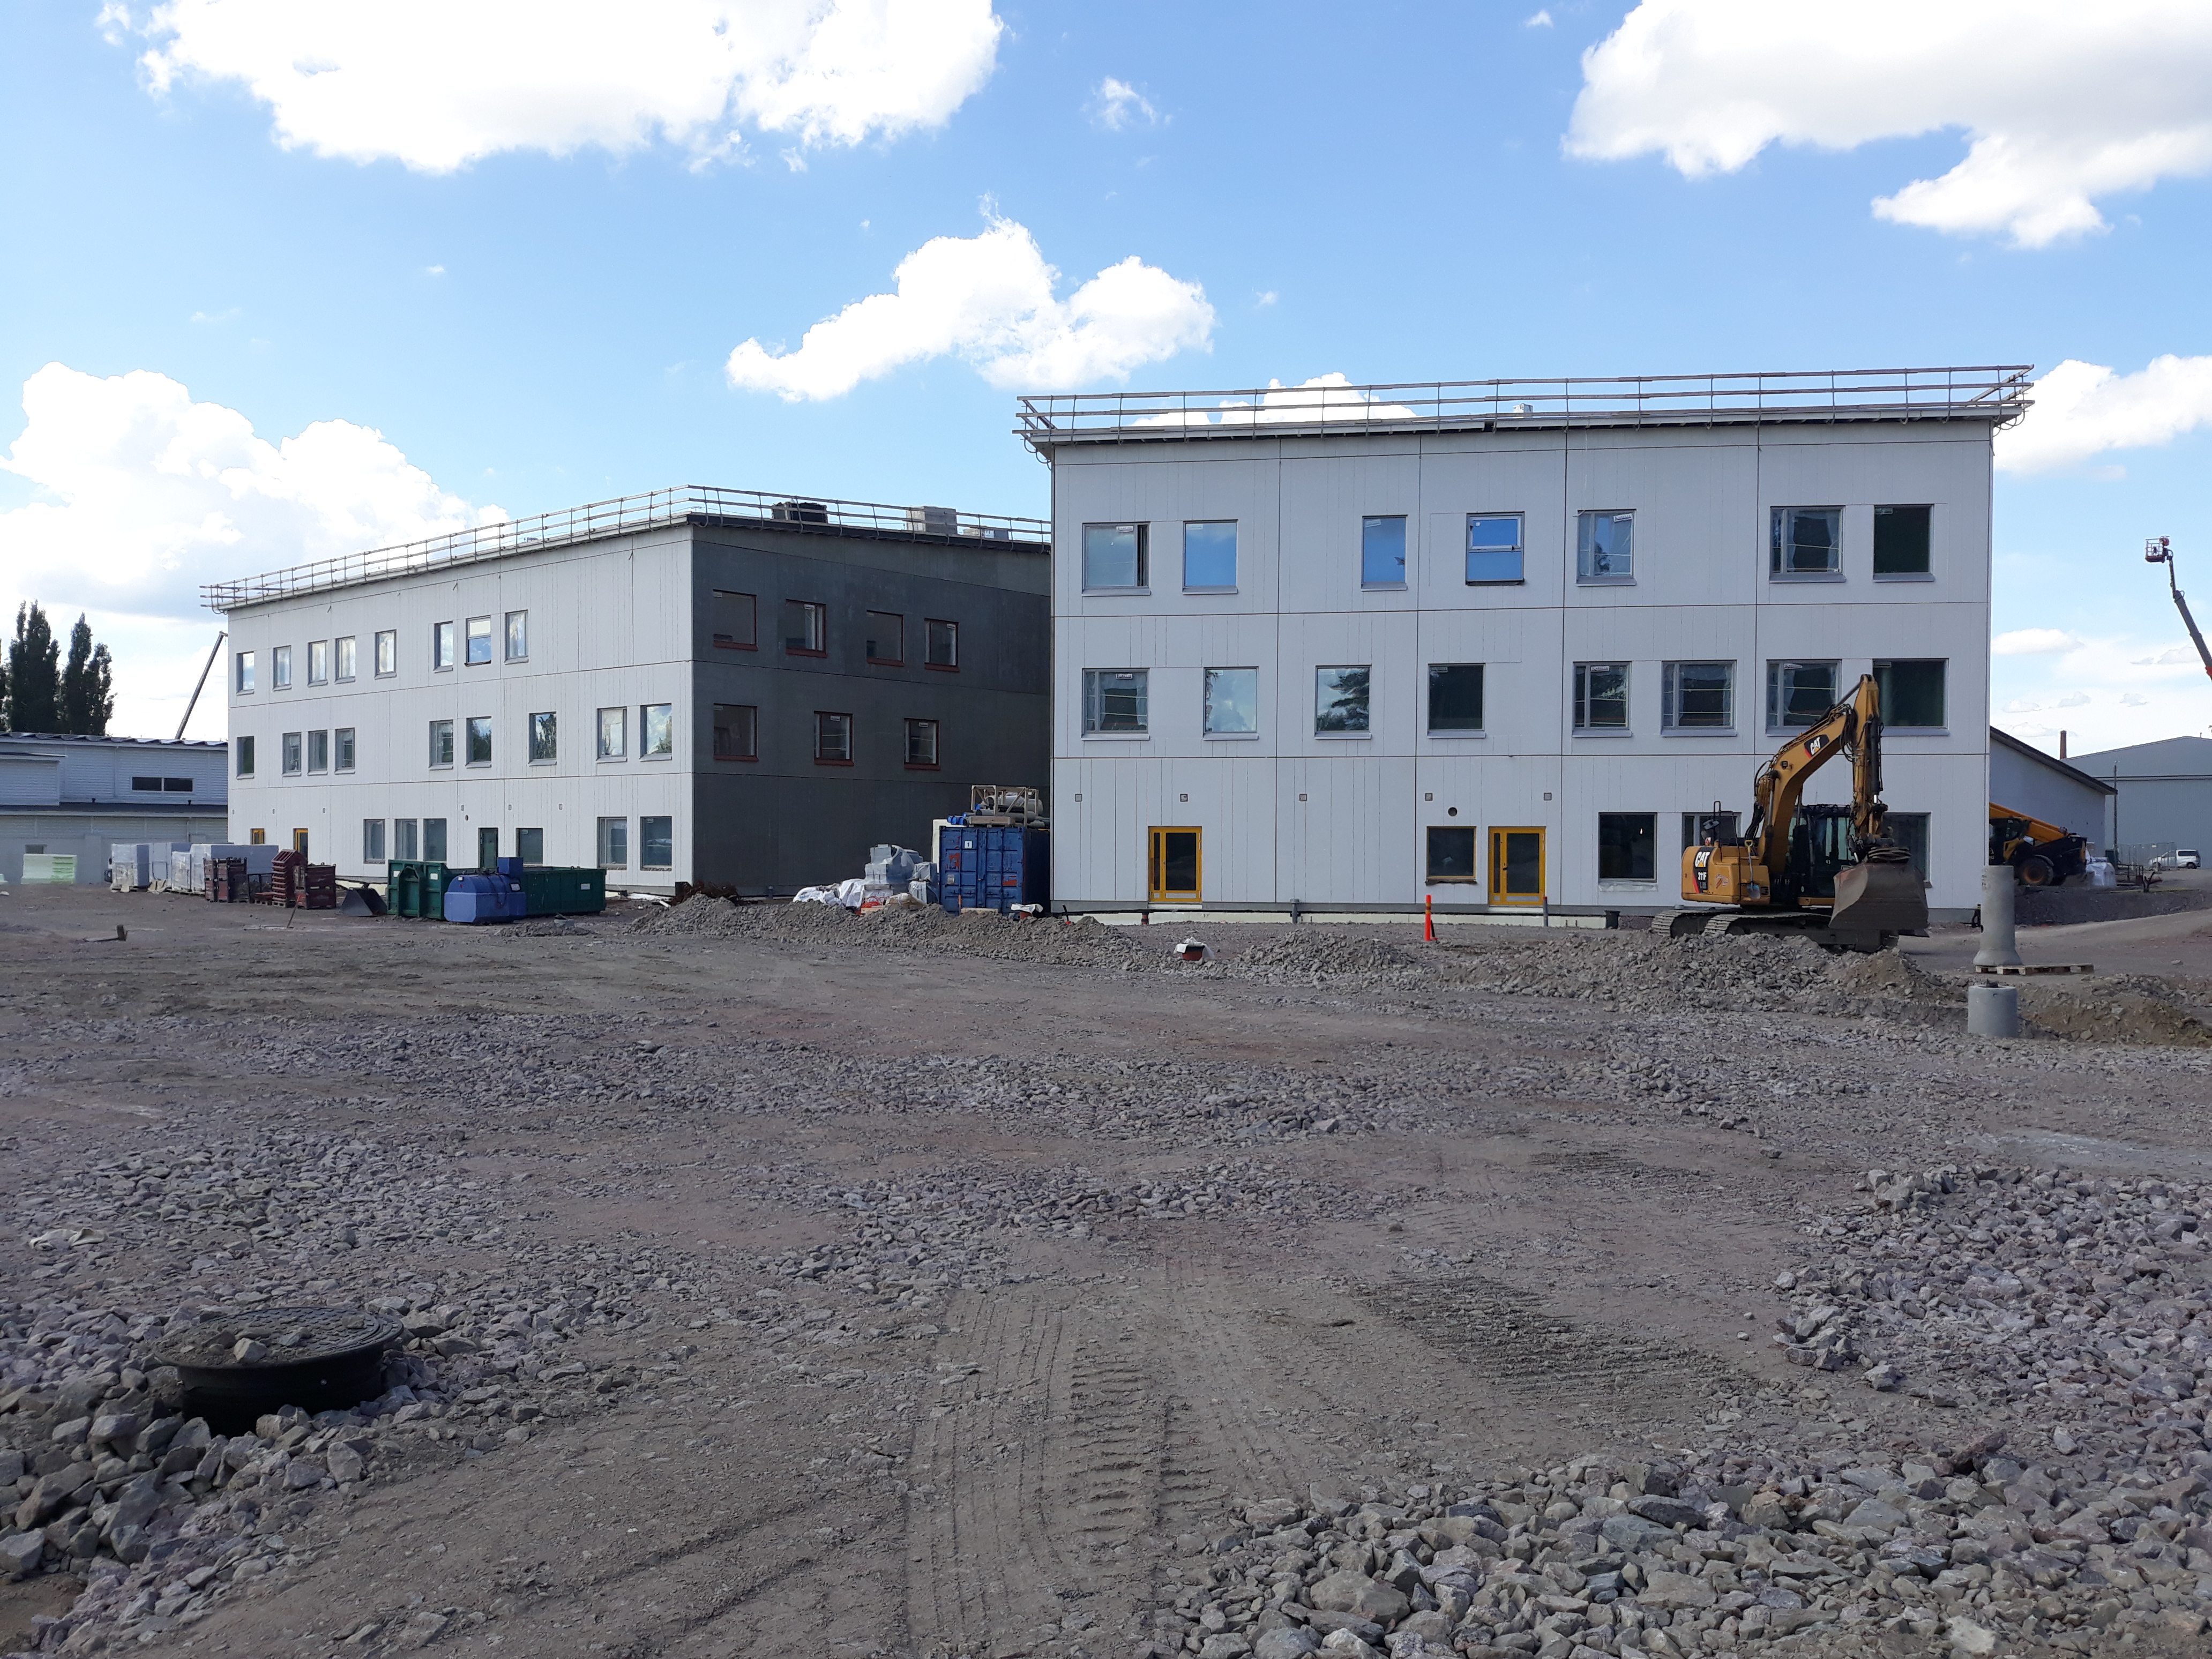 Kuvassa rakentuva koulukeskus jossa tulevat välituntipihat on tasoitettu ja näkyvissä tasoitettu sorastus ennen kuin muita pihan rakennekerroksia tulee.